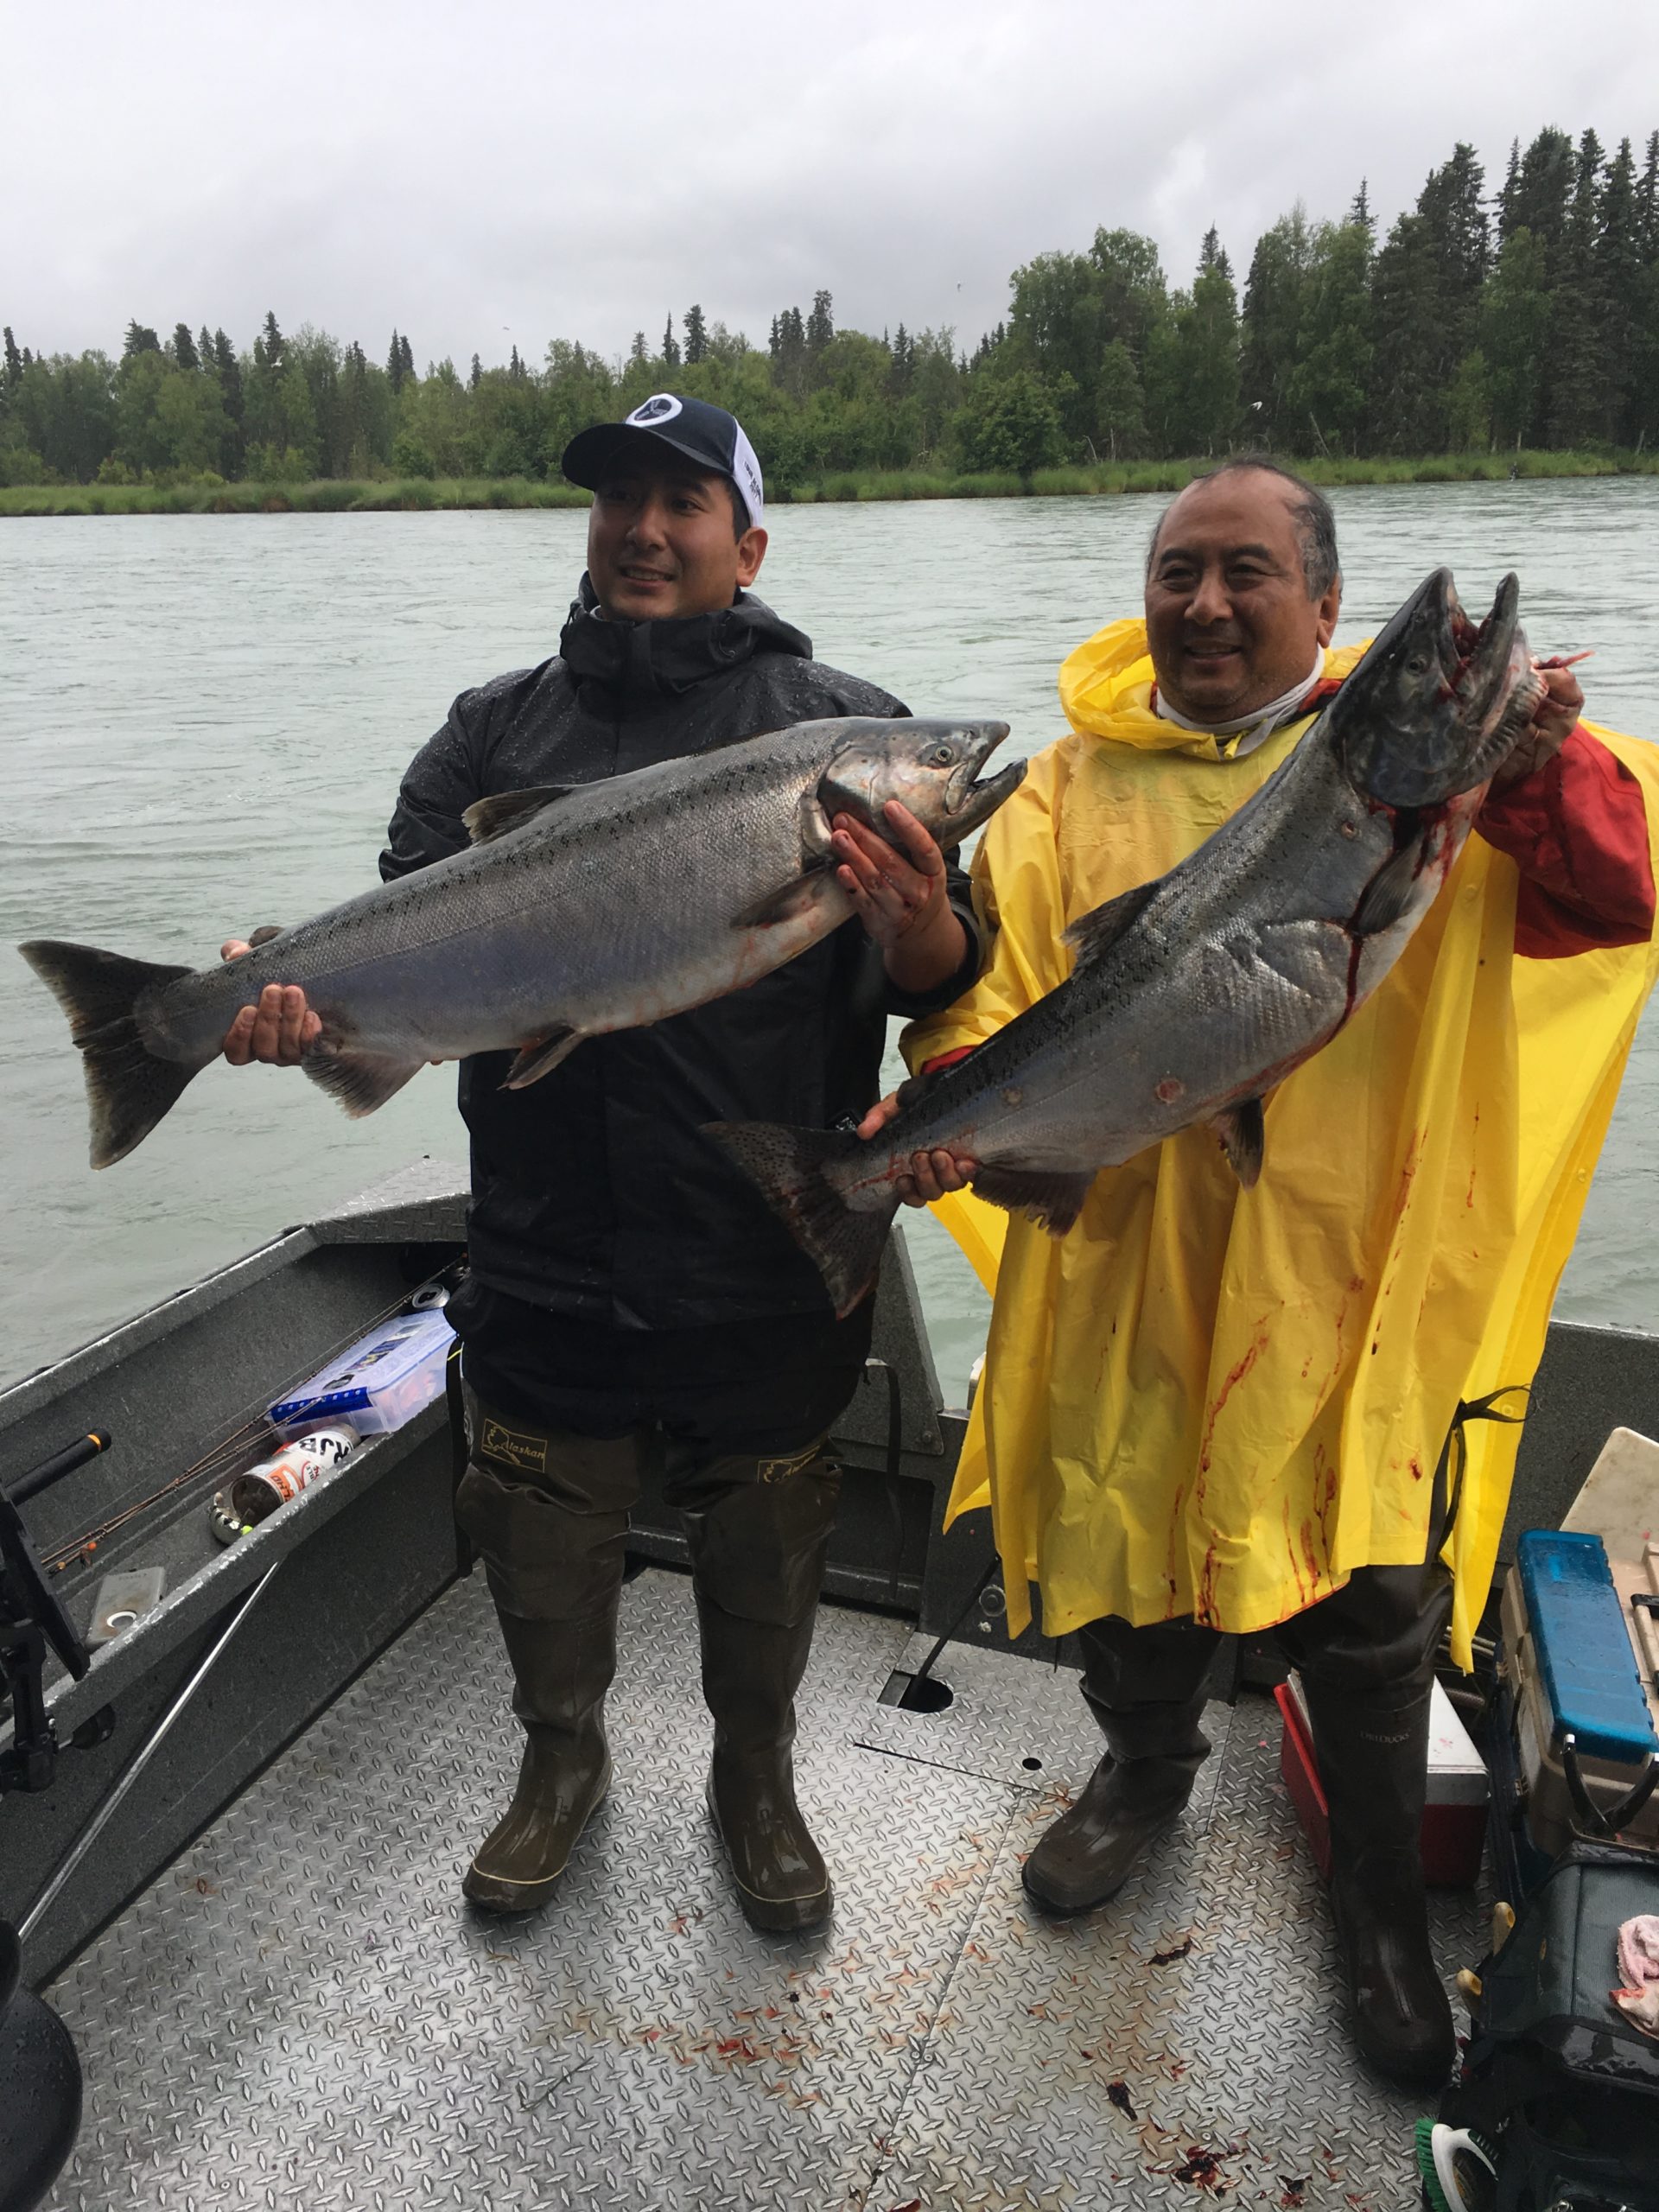 Two men holding salmon